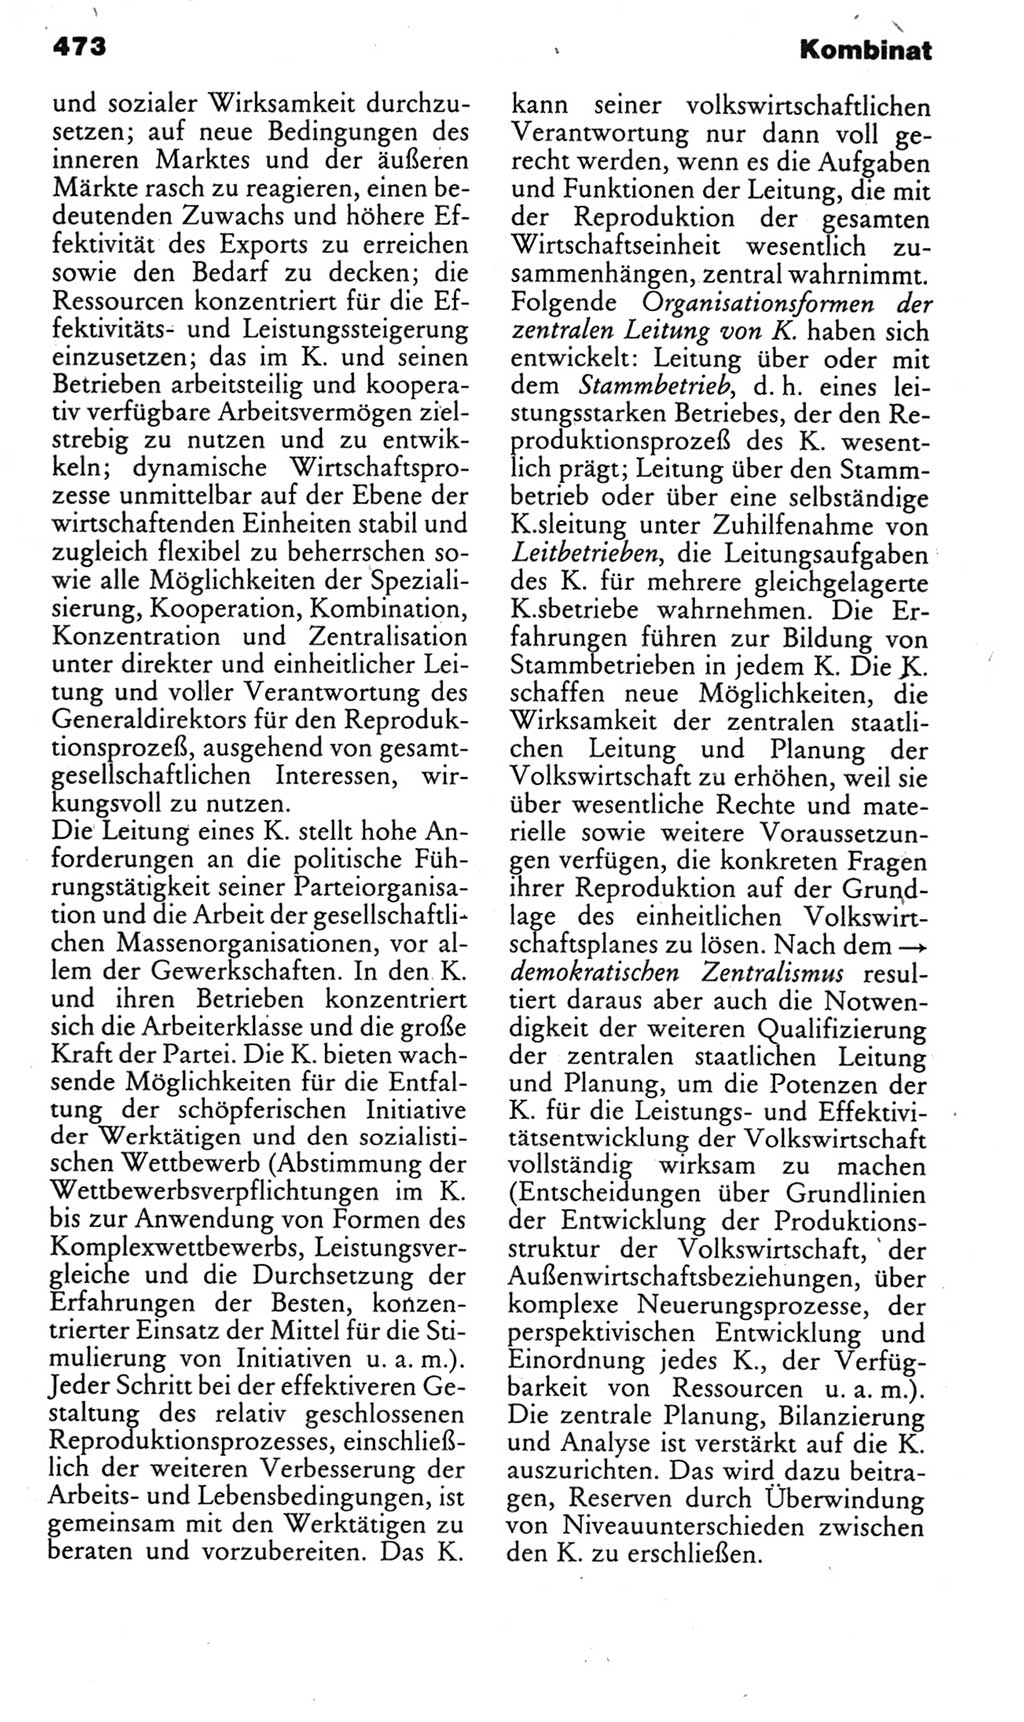 Kleines politisches Wörterbuch [Deutsche Demokratische Republik (DDR)] 1985, Seite 473 (Kl. pol. Wb. DDR 1985, S. 473)